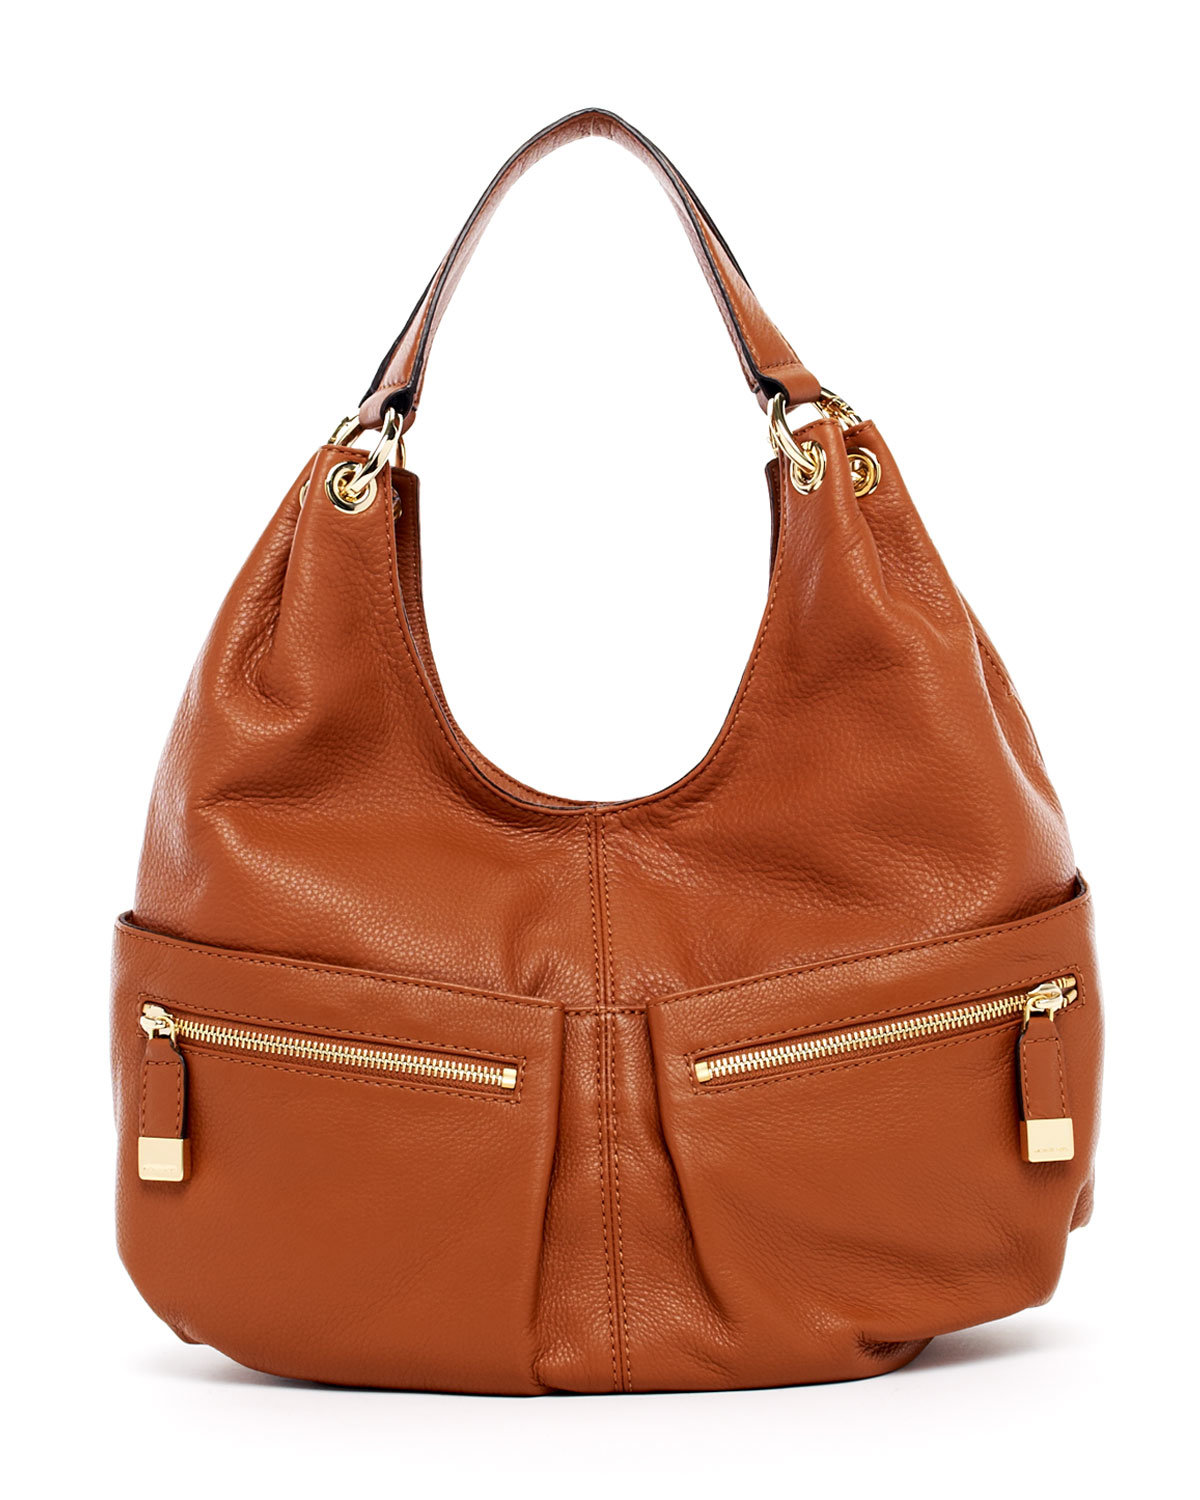 2013 Latest Lady Fashion Tote Handbag (BLS2998)